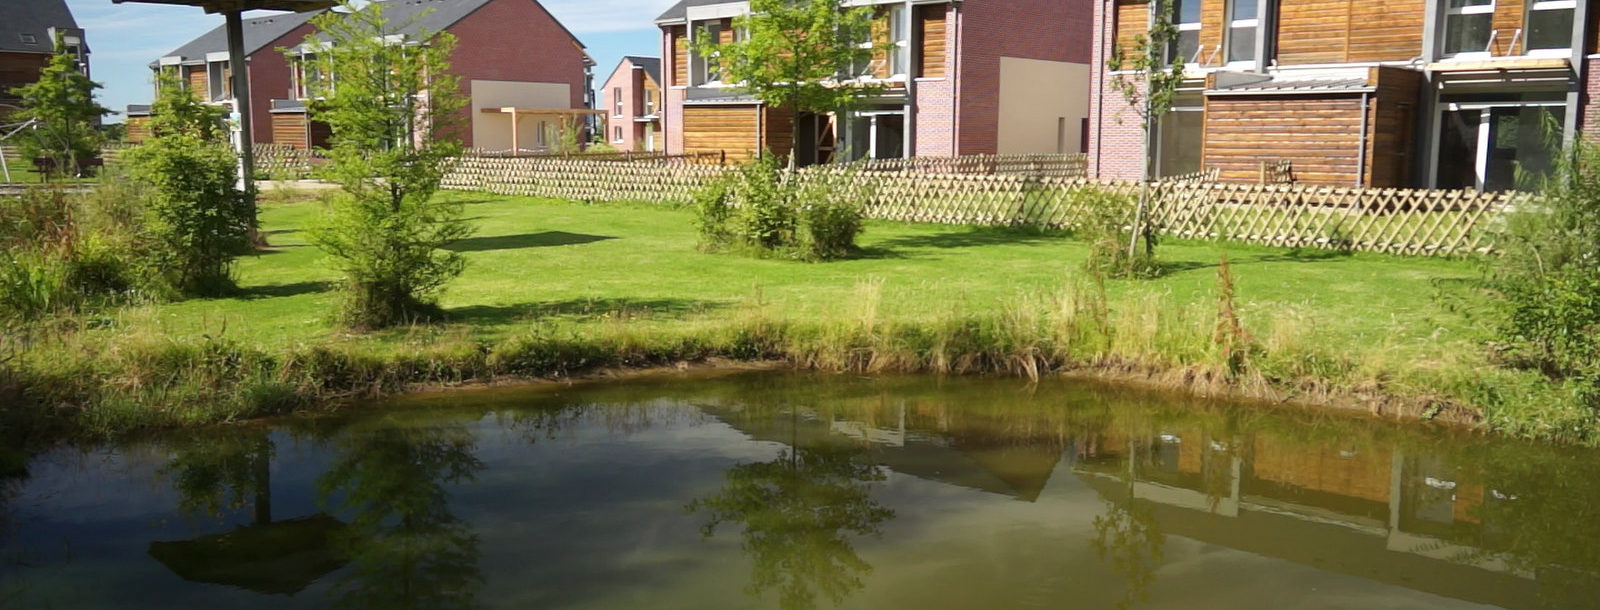 Circuit 05 : Urbanisme durable en milieu rural à Roncherolles-sur-le-Vivier